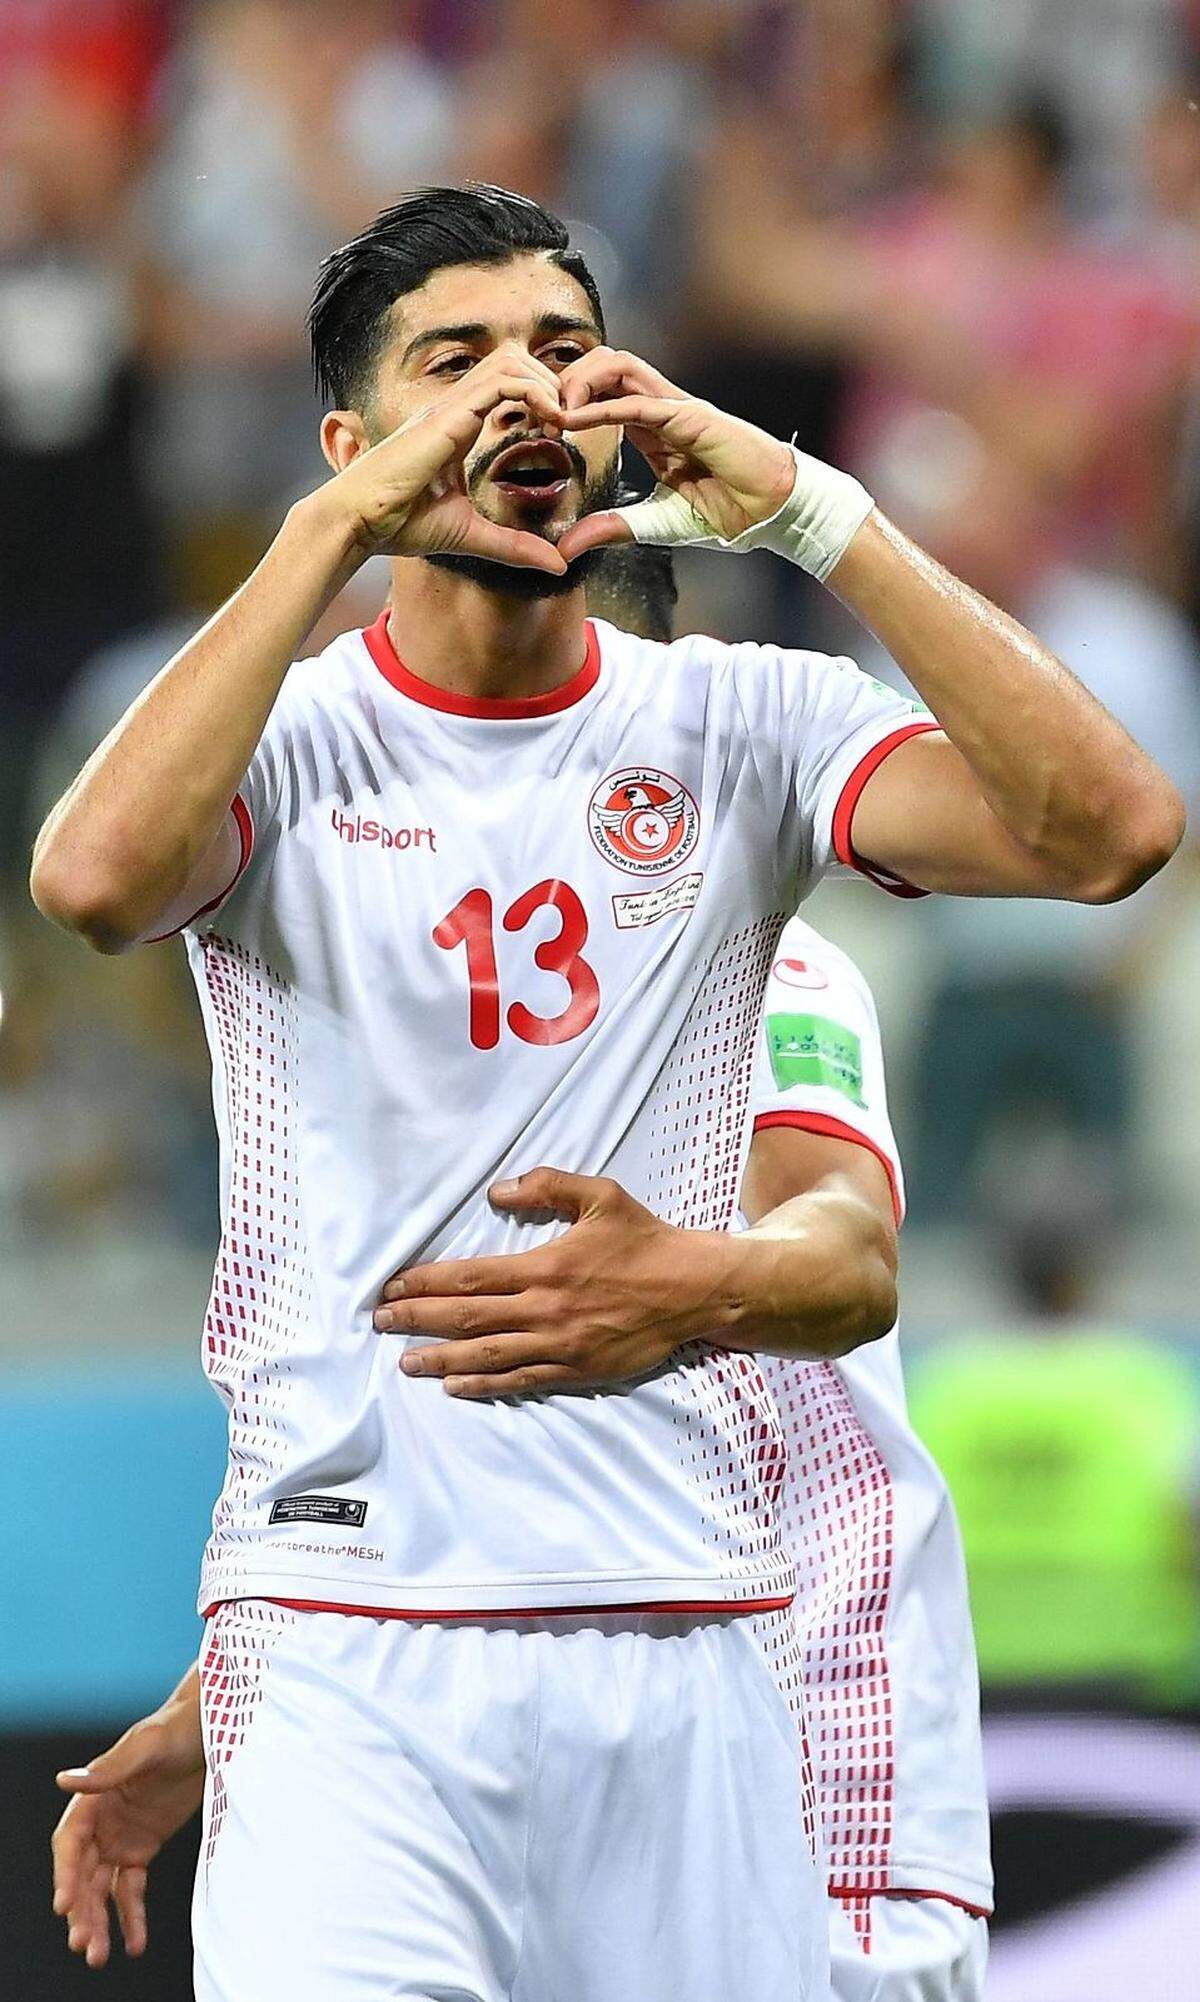 Tunesiens Mittelfeldspieler Ferjani Sassi war bei seinem Torjubel romantisch unterwegs. Er küsste zunächst den Rasen. Danach formte er mit seinen Händen ein Herz und schickte einen Kuss durch das Herz. Tunesien verlor jedoch trotz des Elfmetertors gegen England mit 1:2.